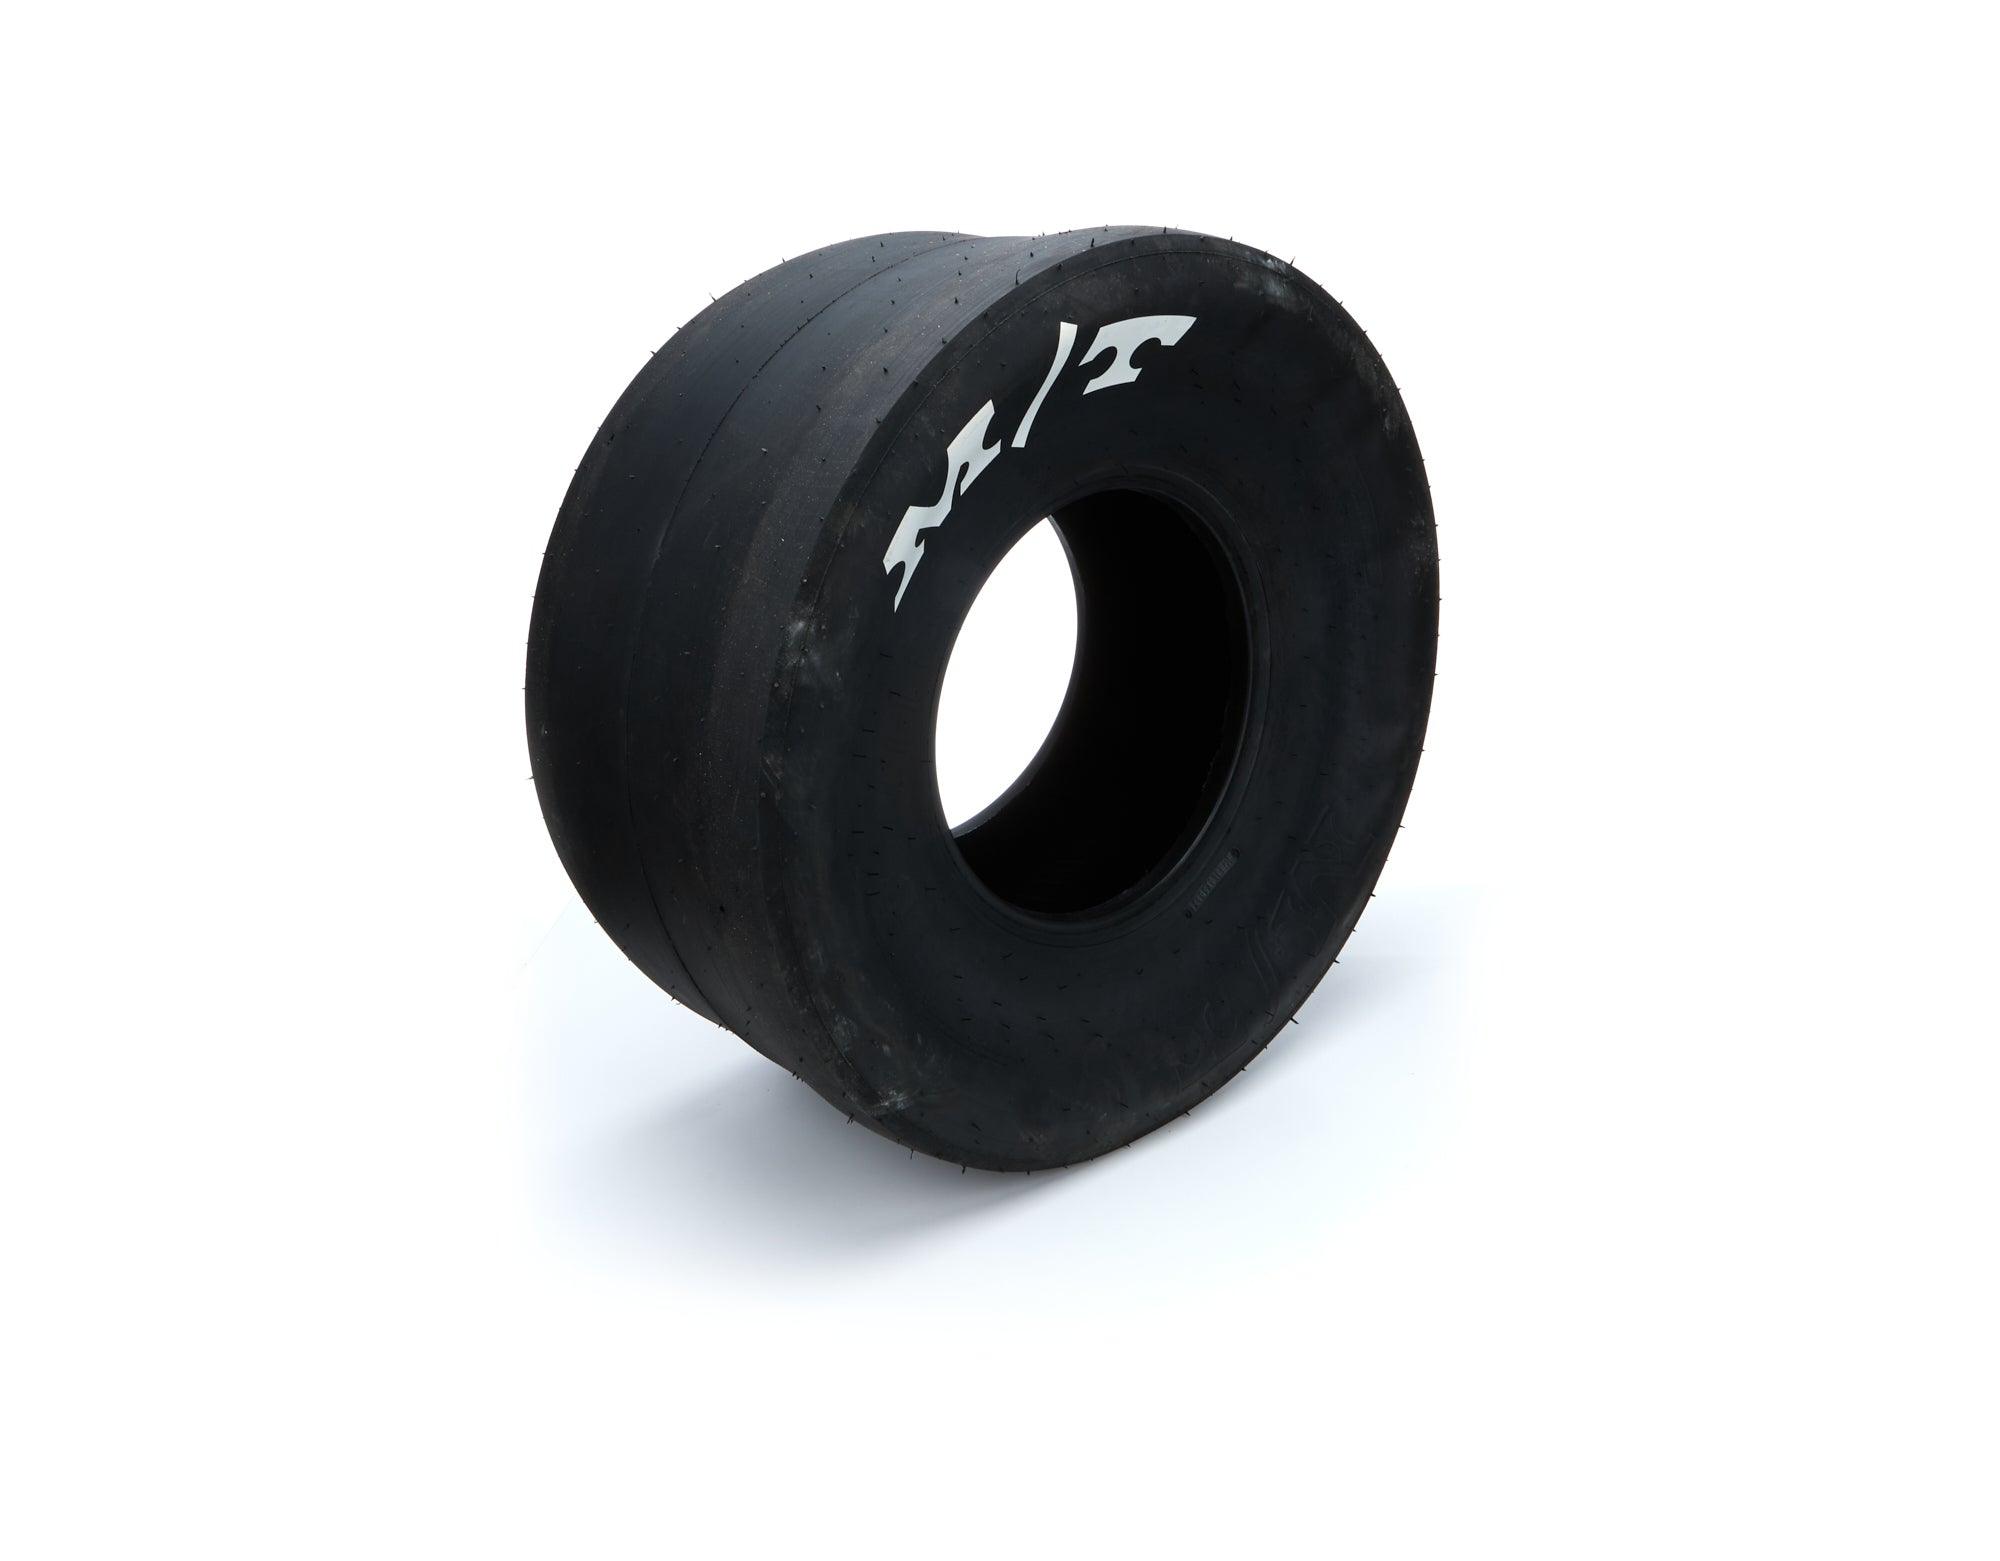 32.0/14.0-15 ET Drag Tire - Burlile Performance Products